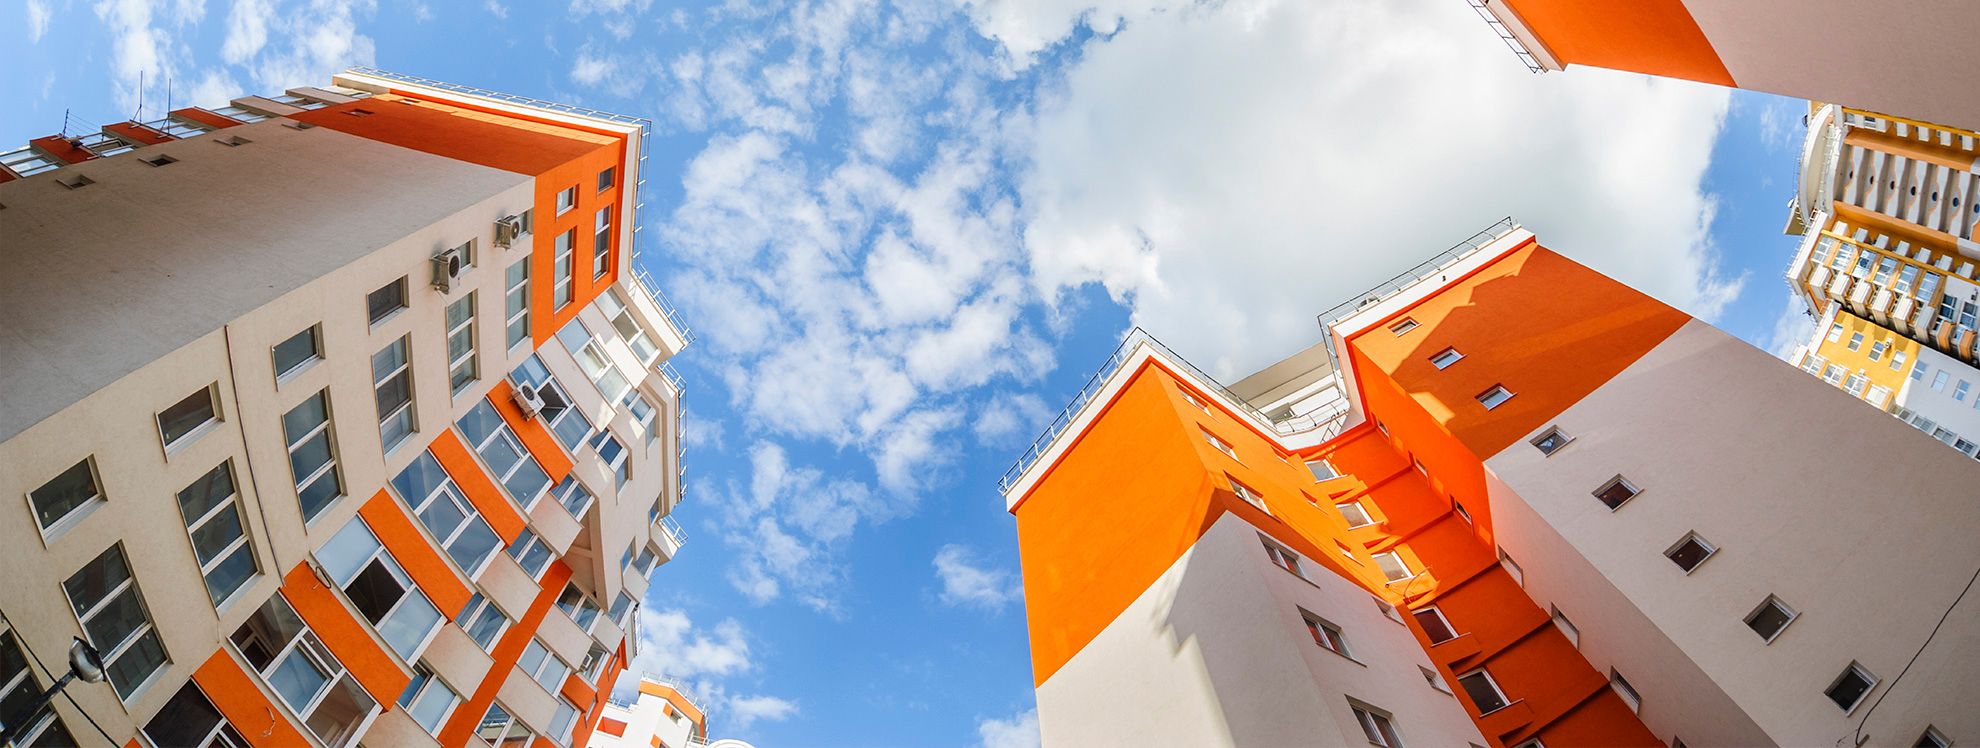 Ипотечная квартира форум. Оранжевый многоэтажный дом. Оранжевые новостройки. Оранжевые дома многоэтажки. Абсолют банк.